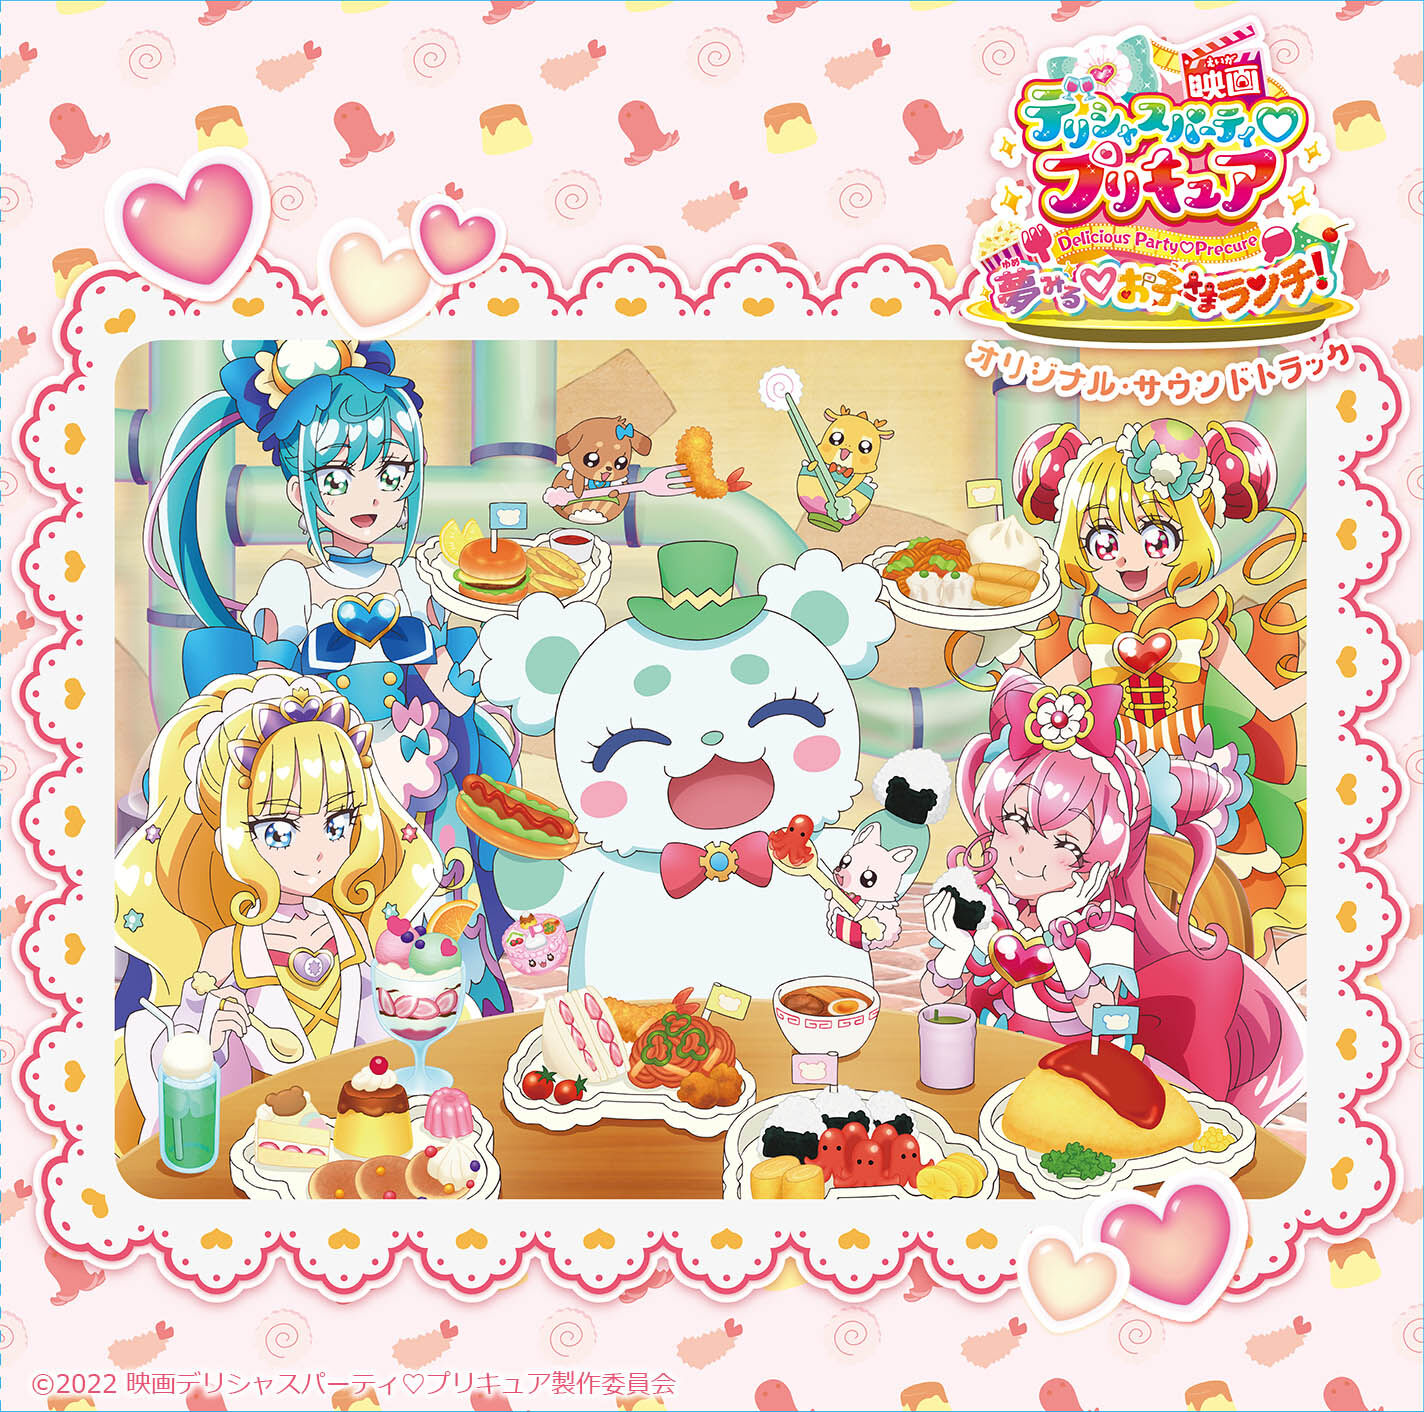 Delicious Party Pretty Cure Yumemiru Okosama Lunch Original Soundtrack Pretty Cure Wiki Fandom